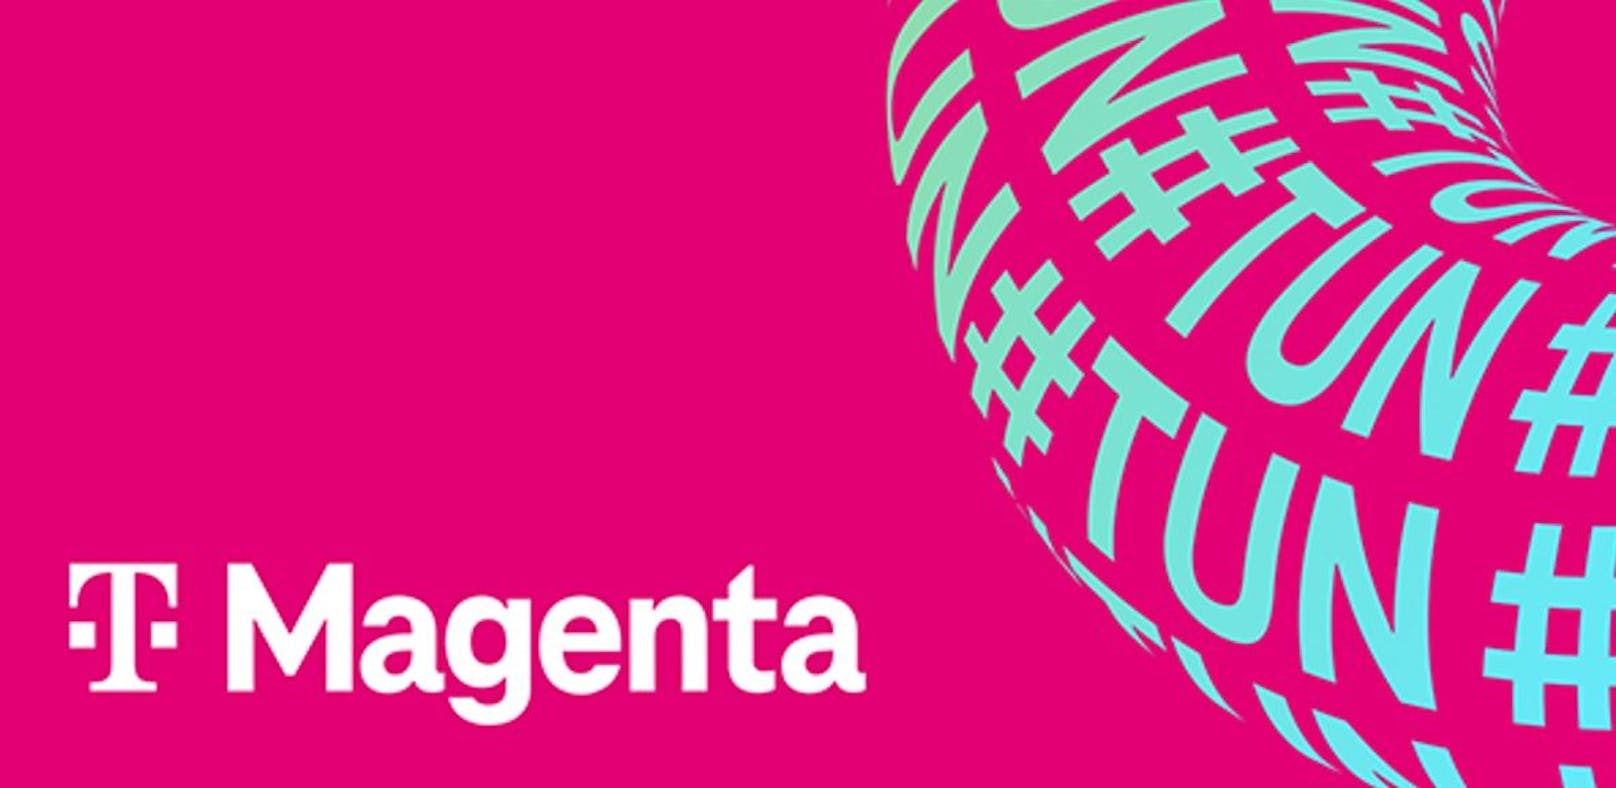 Magenta #TUN Award vergibt 50.000 Euro an nachhaltige Projekte.